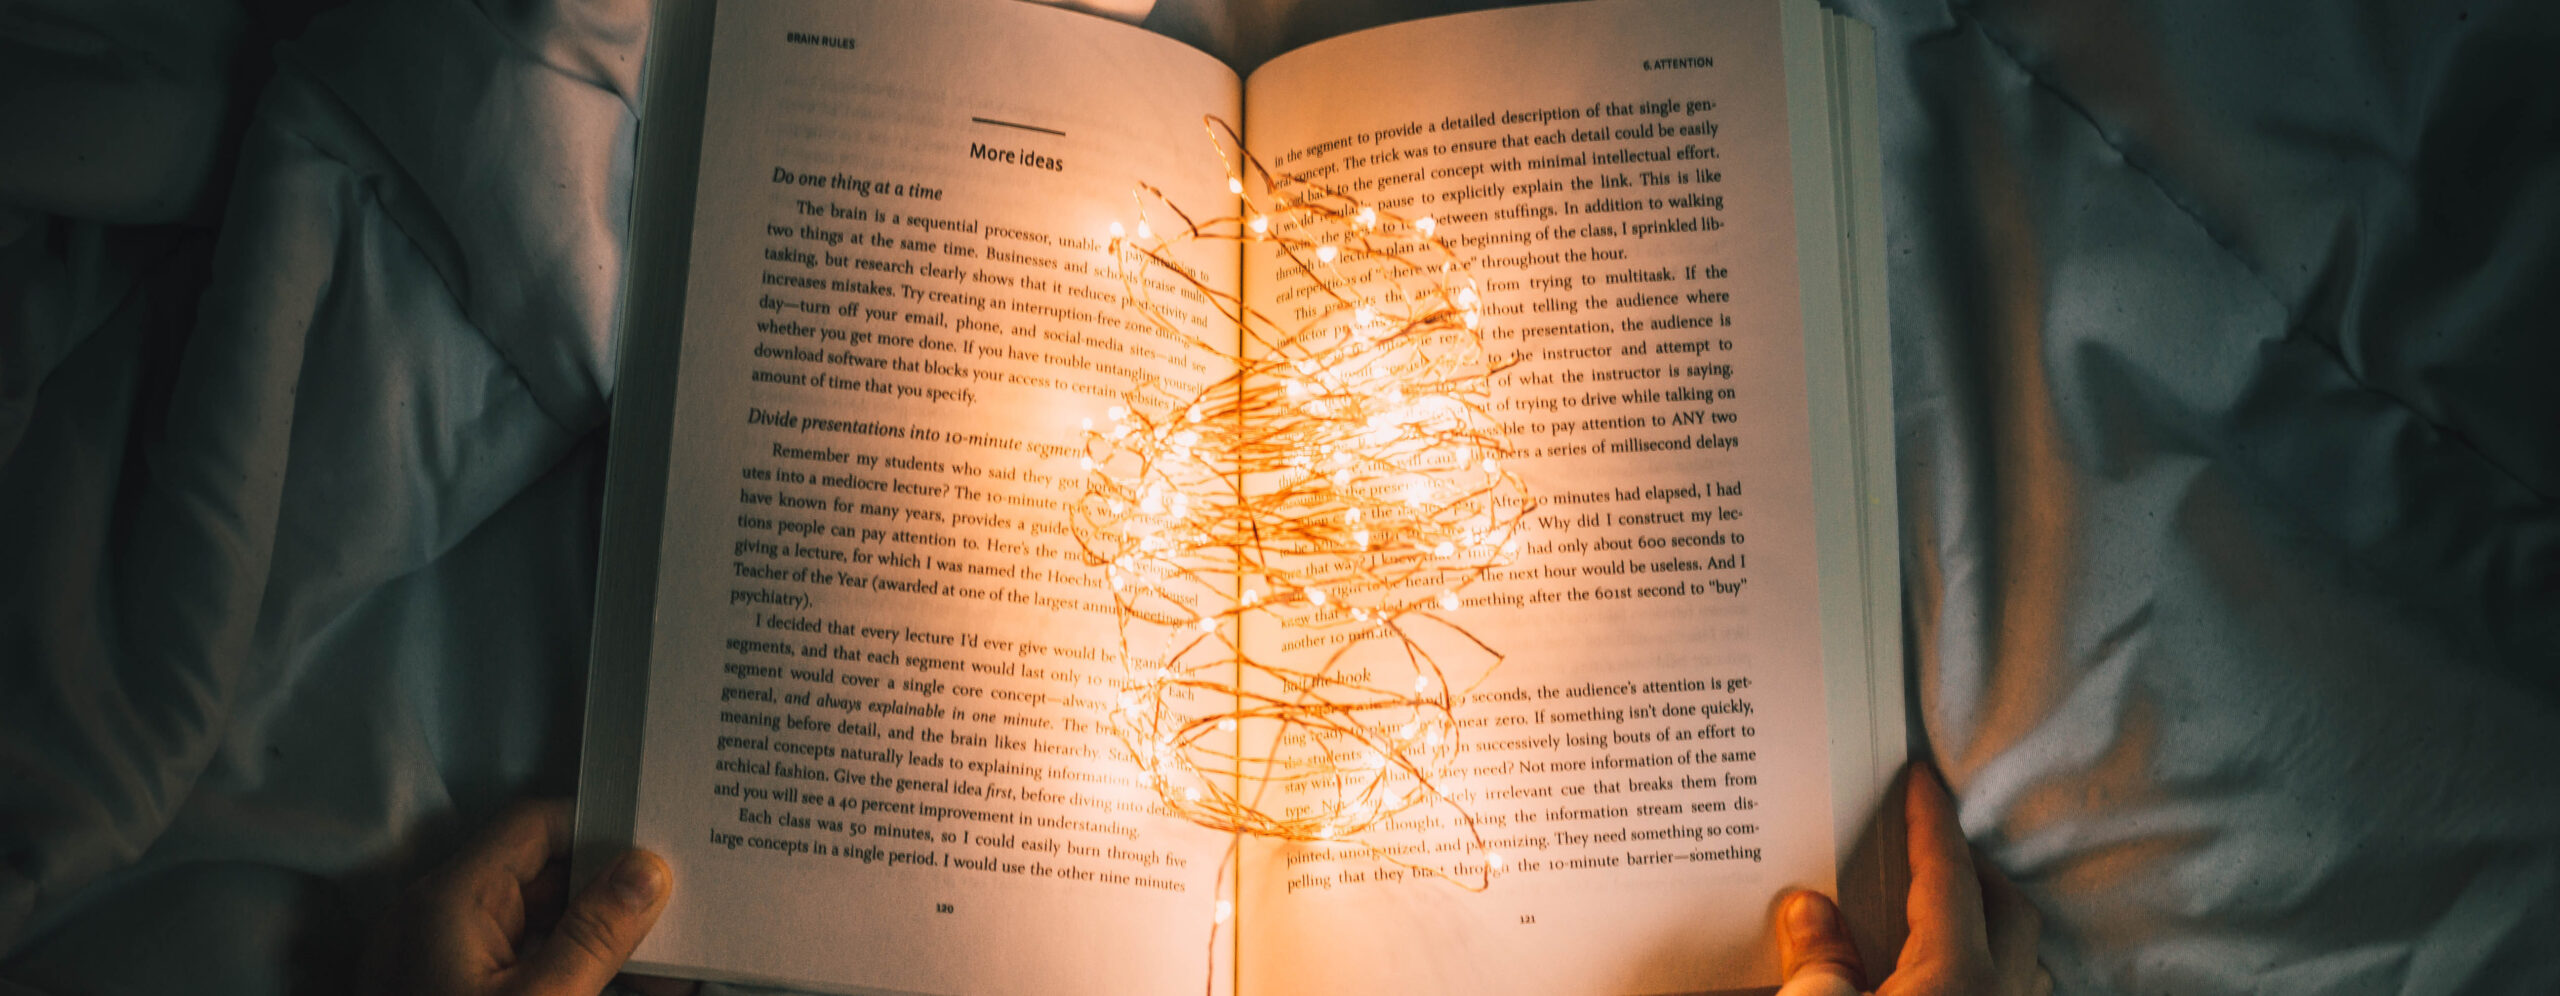 Buch aufgeschlagen mit Lichterkette